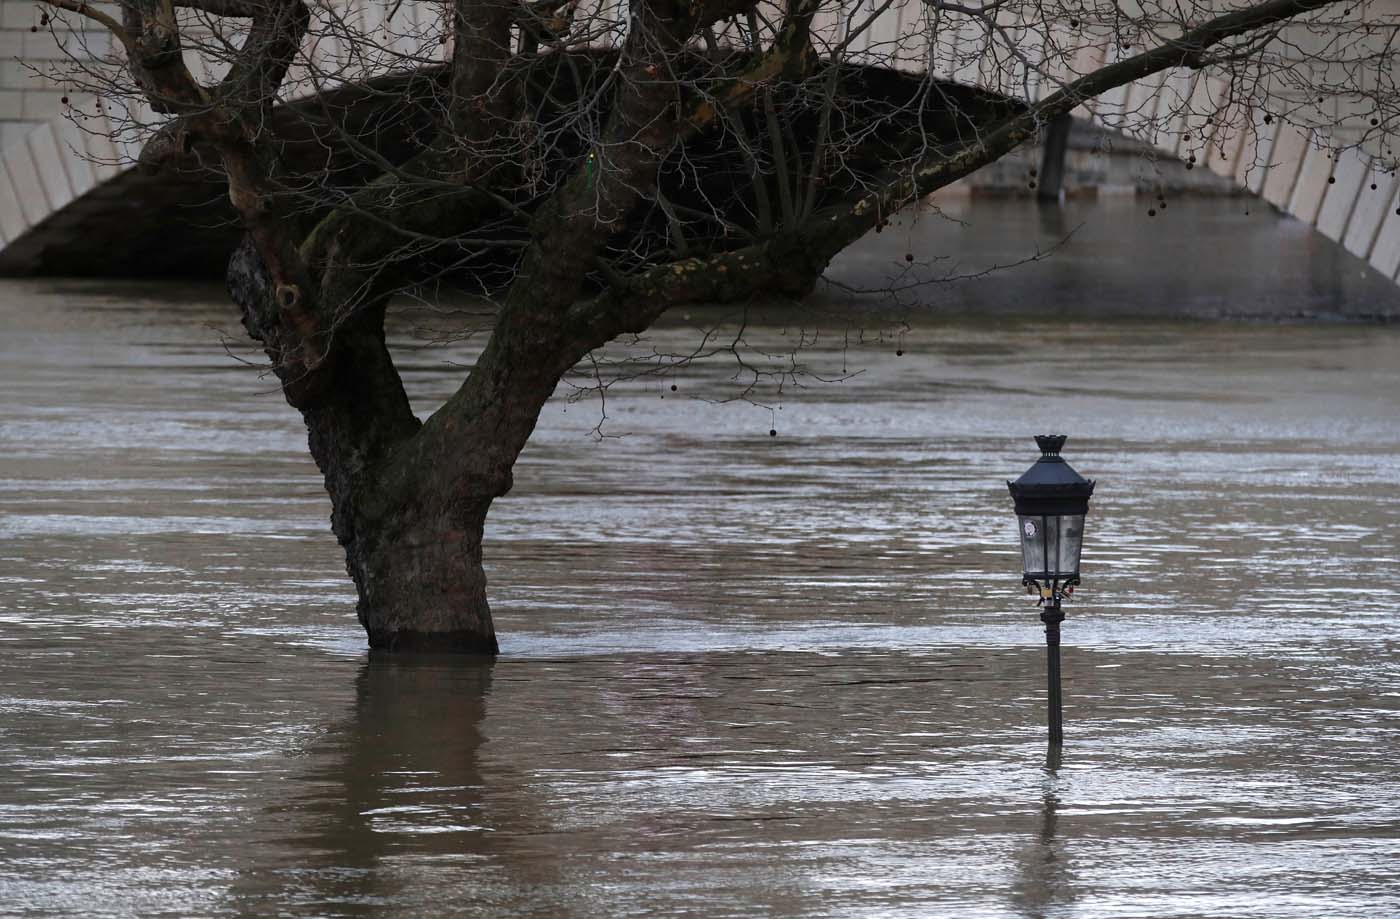 París sigue bajo el agua por crecida del Sena (fotos)